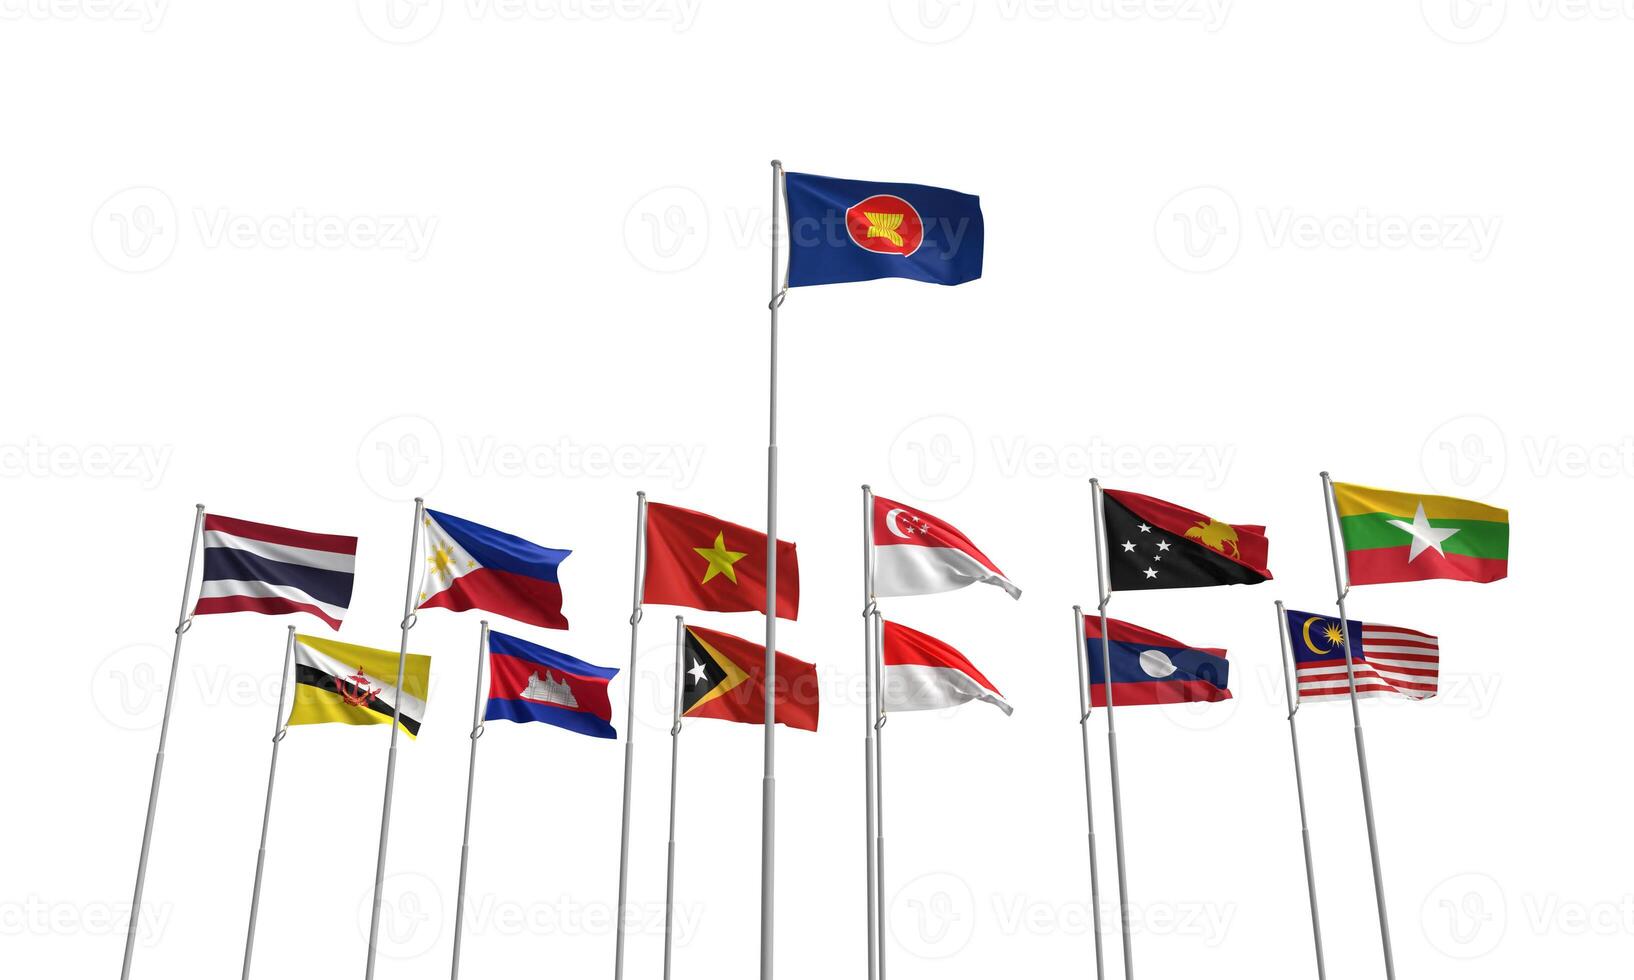 asean aec drapeau groupe pays international symbole signe Birmanie Indonésie Malaisie brunei communauté Laos Siam Terre Cambodge Singapour Philippin vietnam gouvernement économie membre affaires sud-est photo